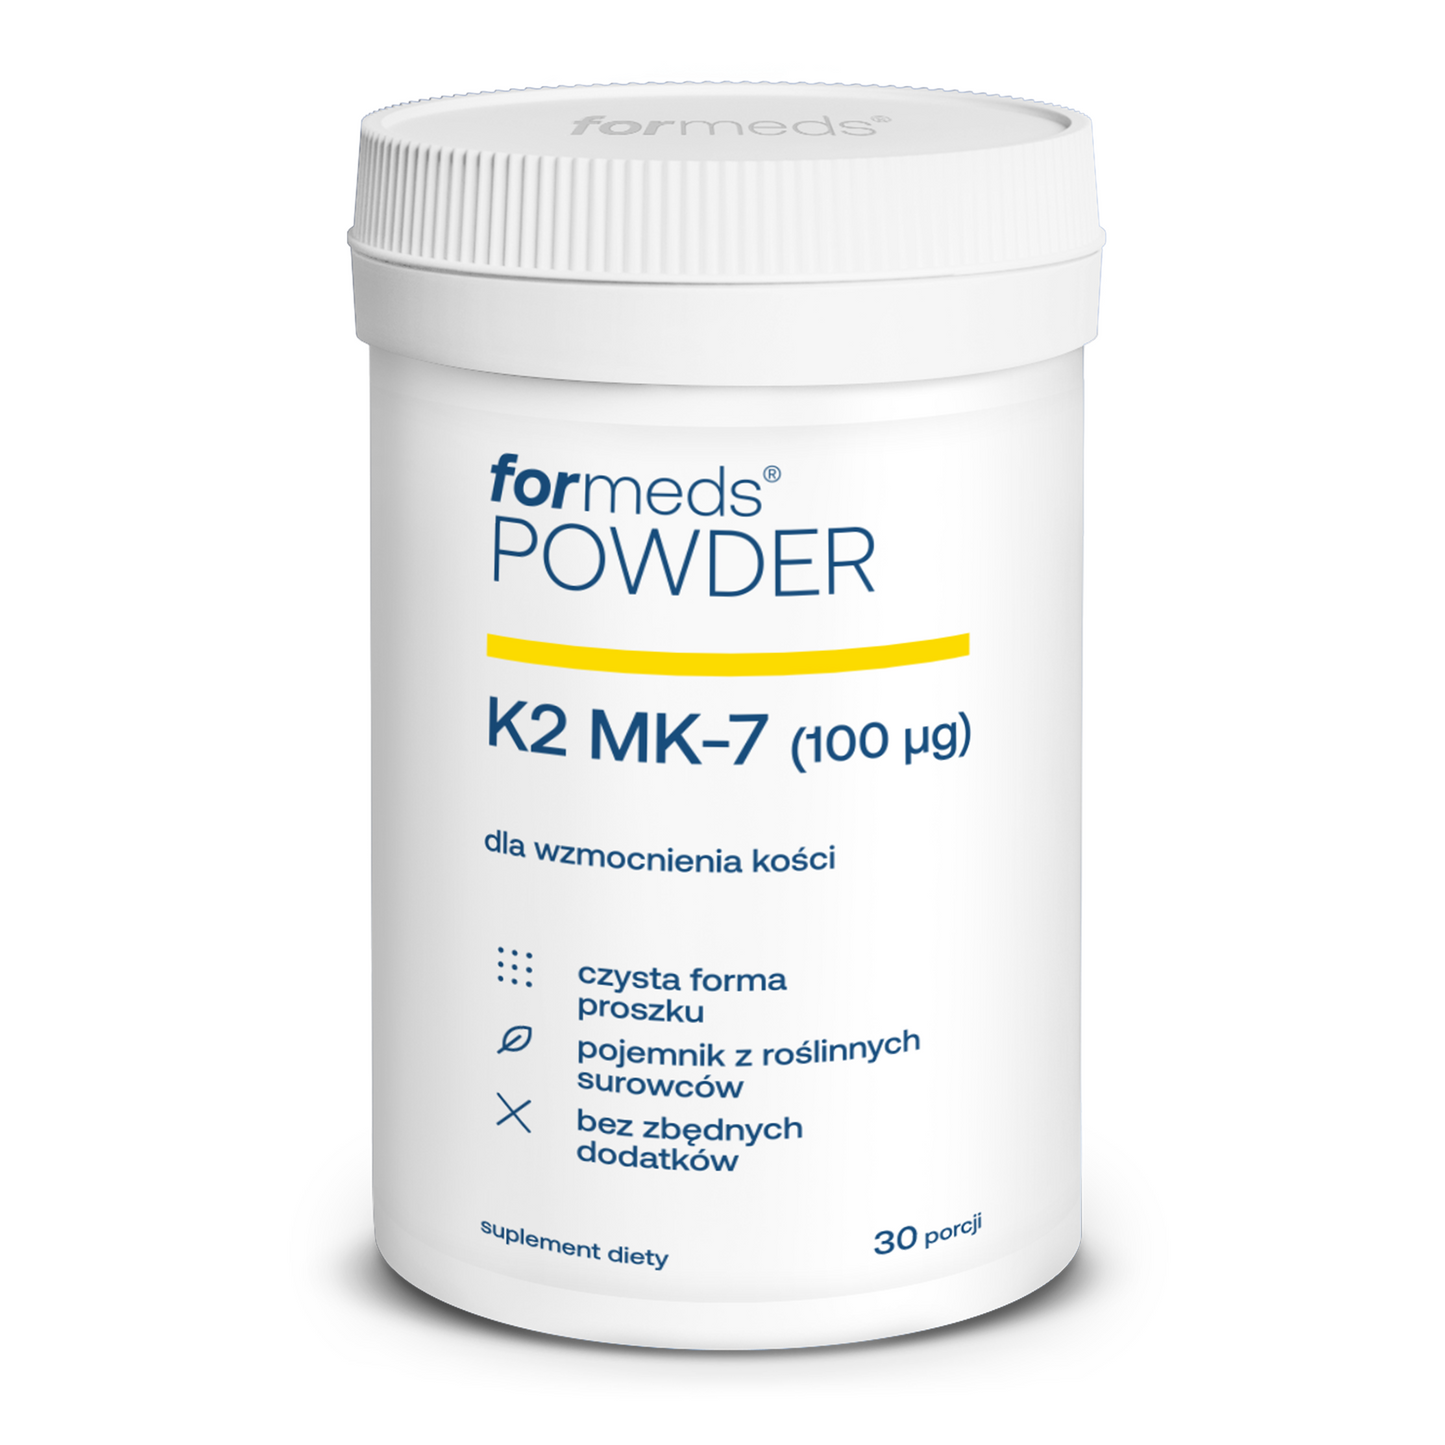 POWDER K2 MK-7 - witamina K2 MK7 w proszku